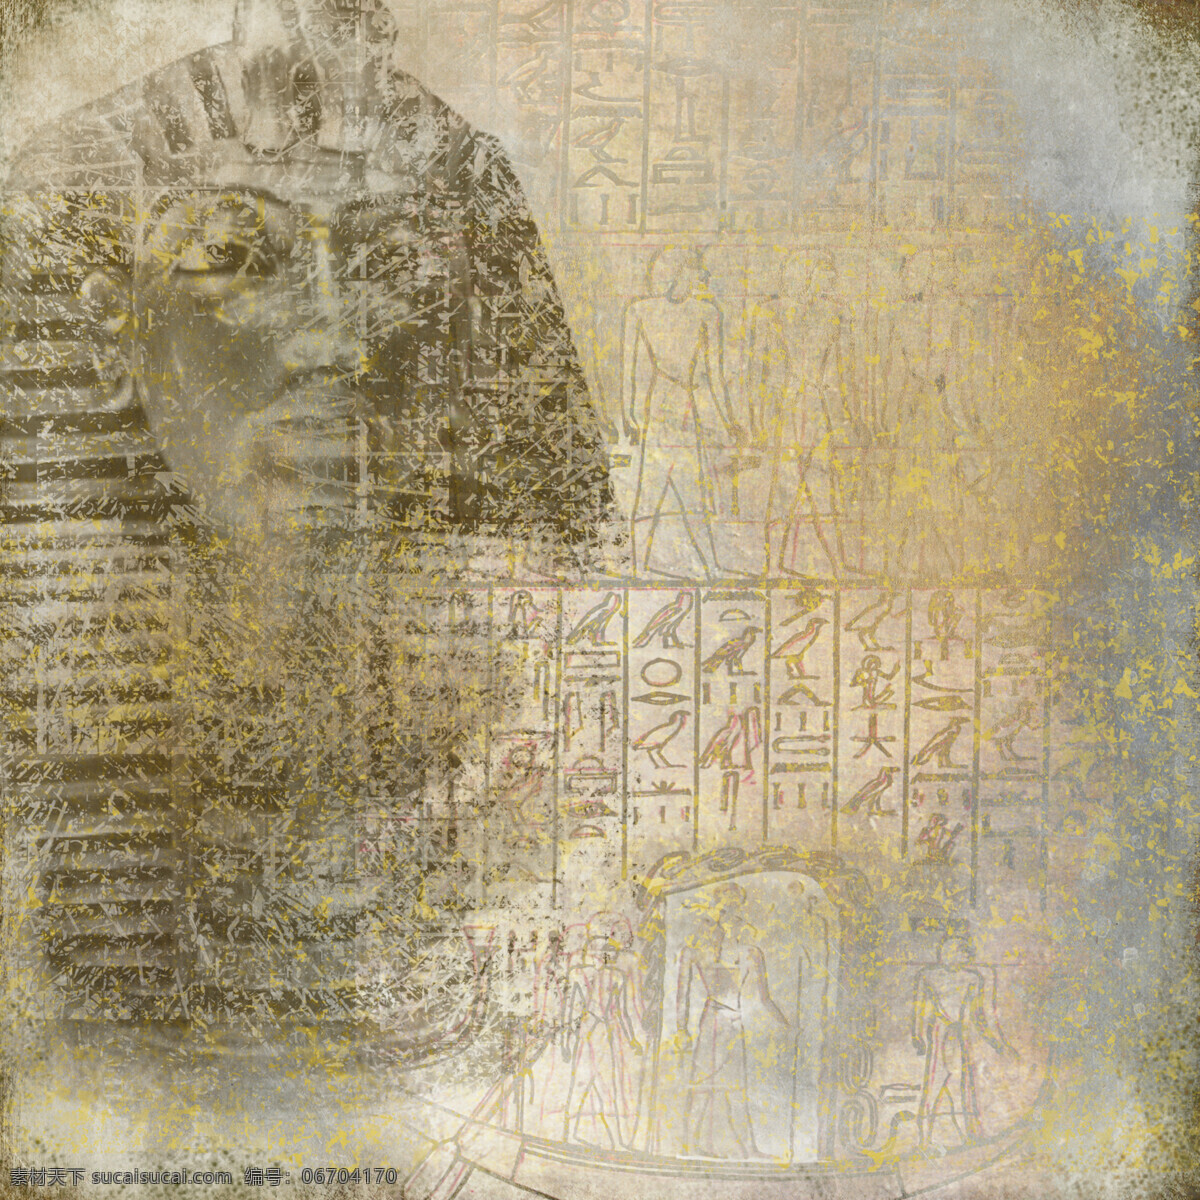 埃及 法老 图案 背景 埃及法老 埃及传统图案 埃及图腾 埃及壁画 古埃及文化 其他艺术 文化艺术 黄色